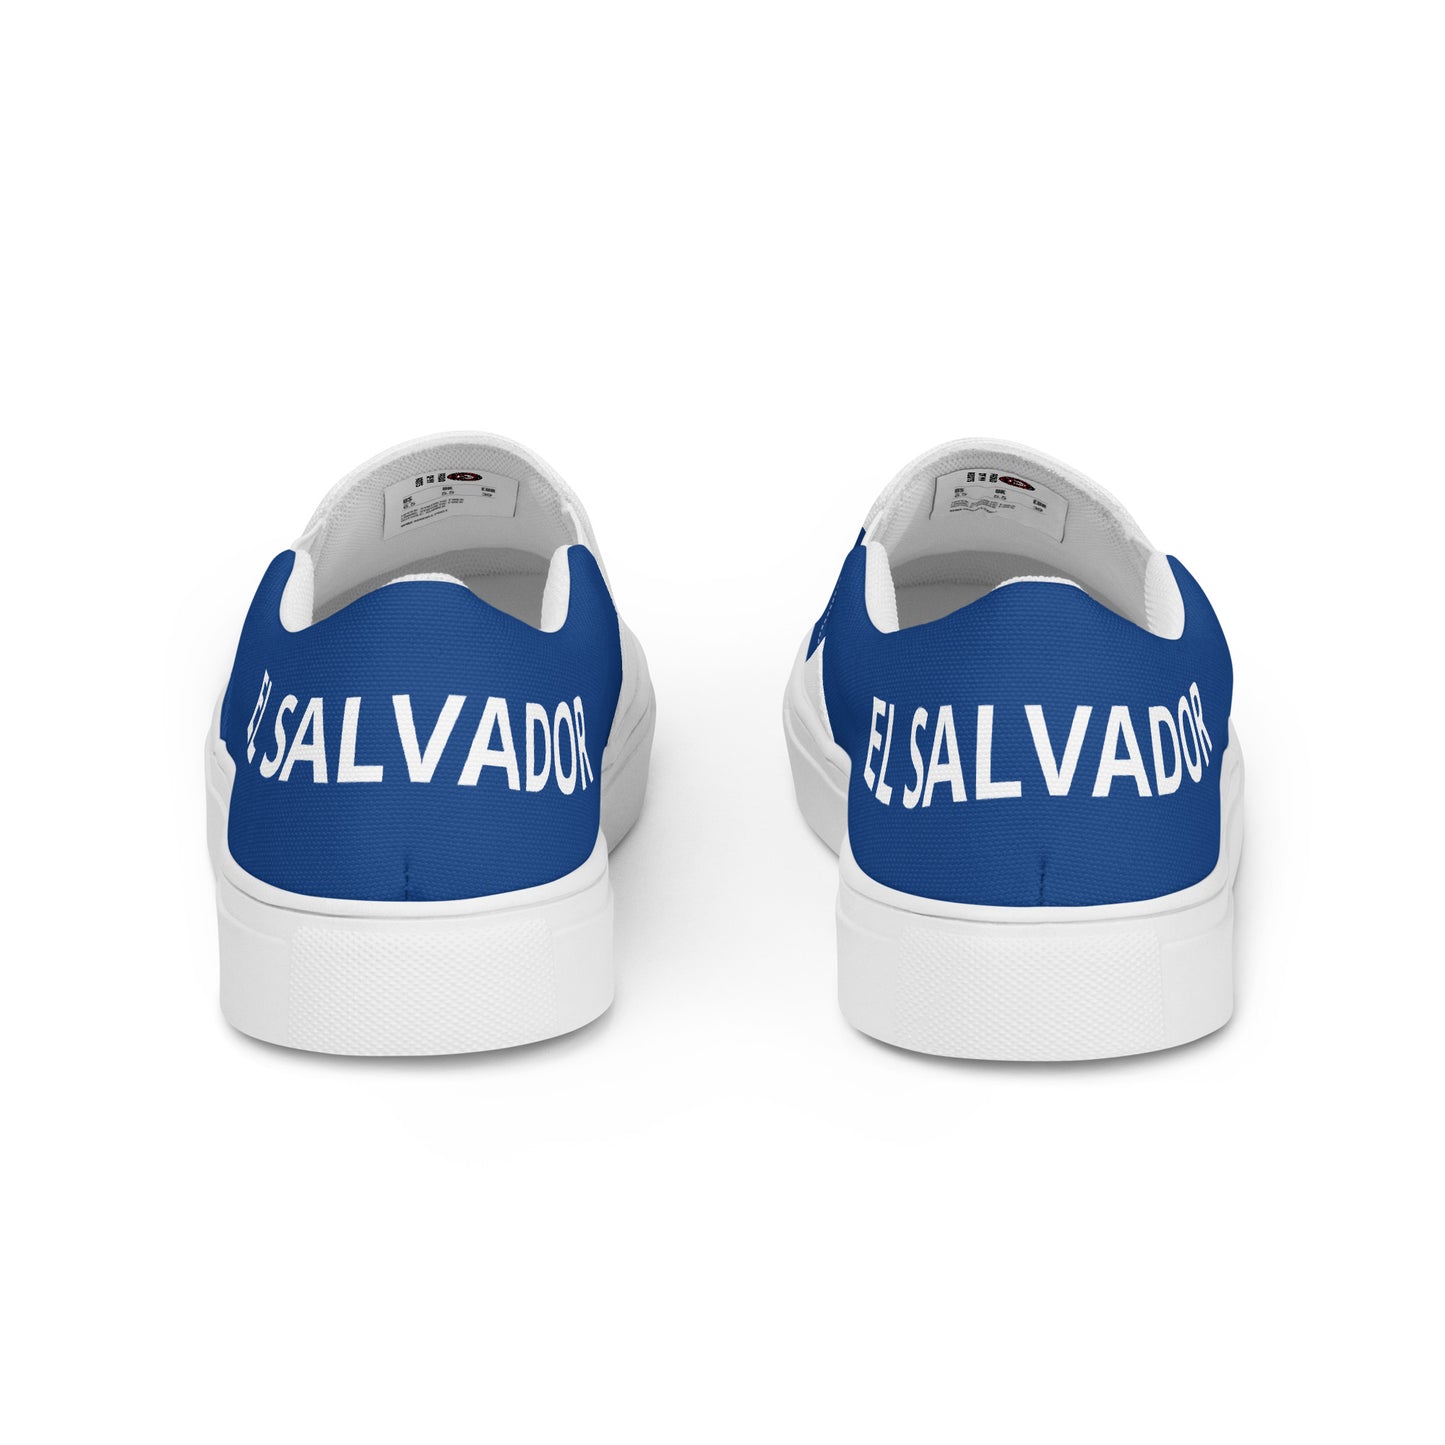 El Salvador - Men - Bandera - Slip-on shoes